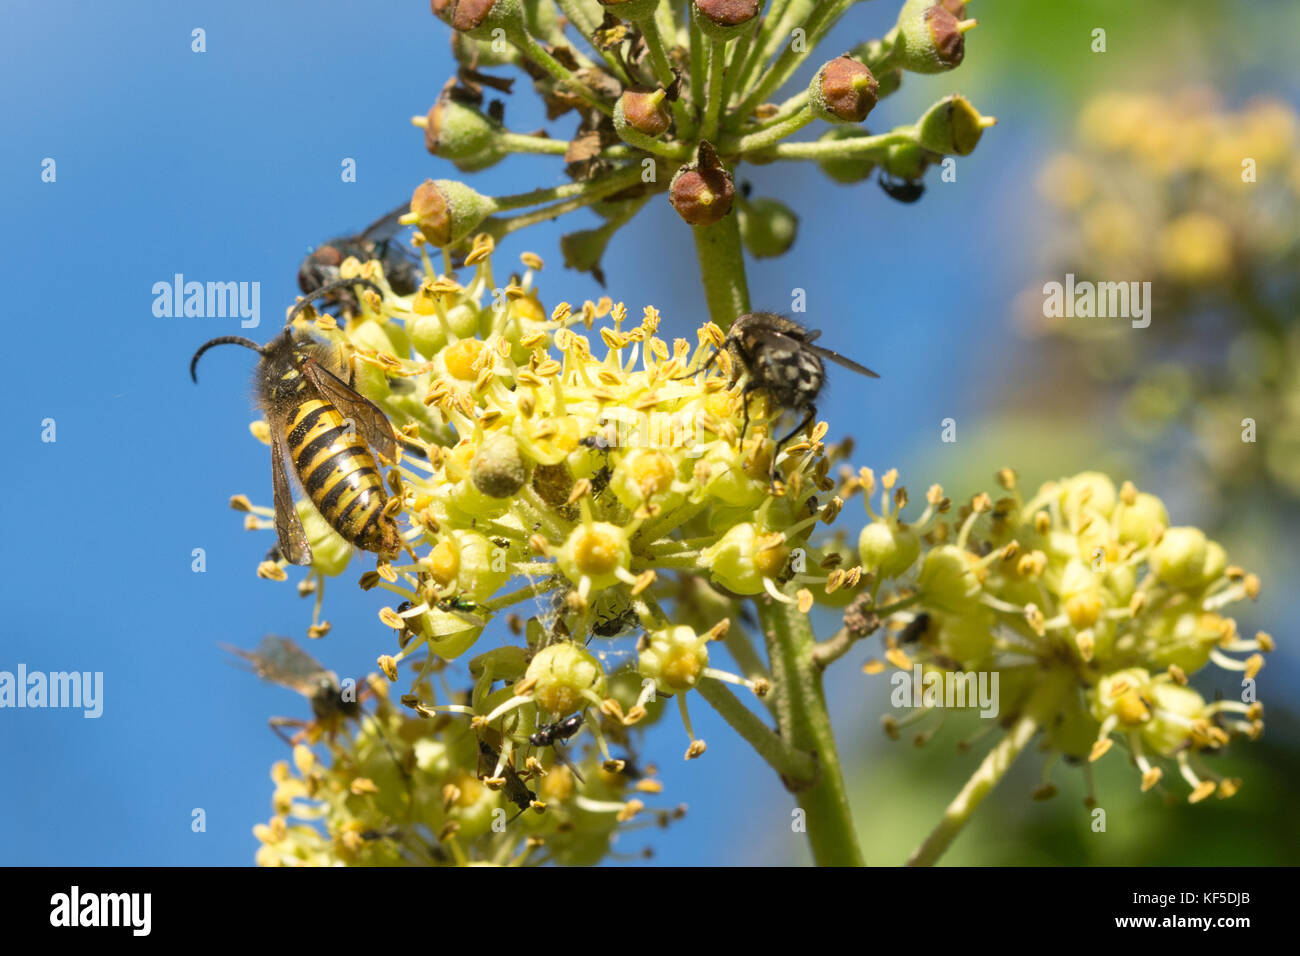 Vielzahl von Insekten, einschließlich einer gemeinsamen Wespe (Vespula vulgaris), nectaring auf Efeu Blumen im Oktober Stockfoto